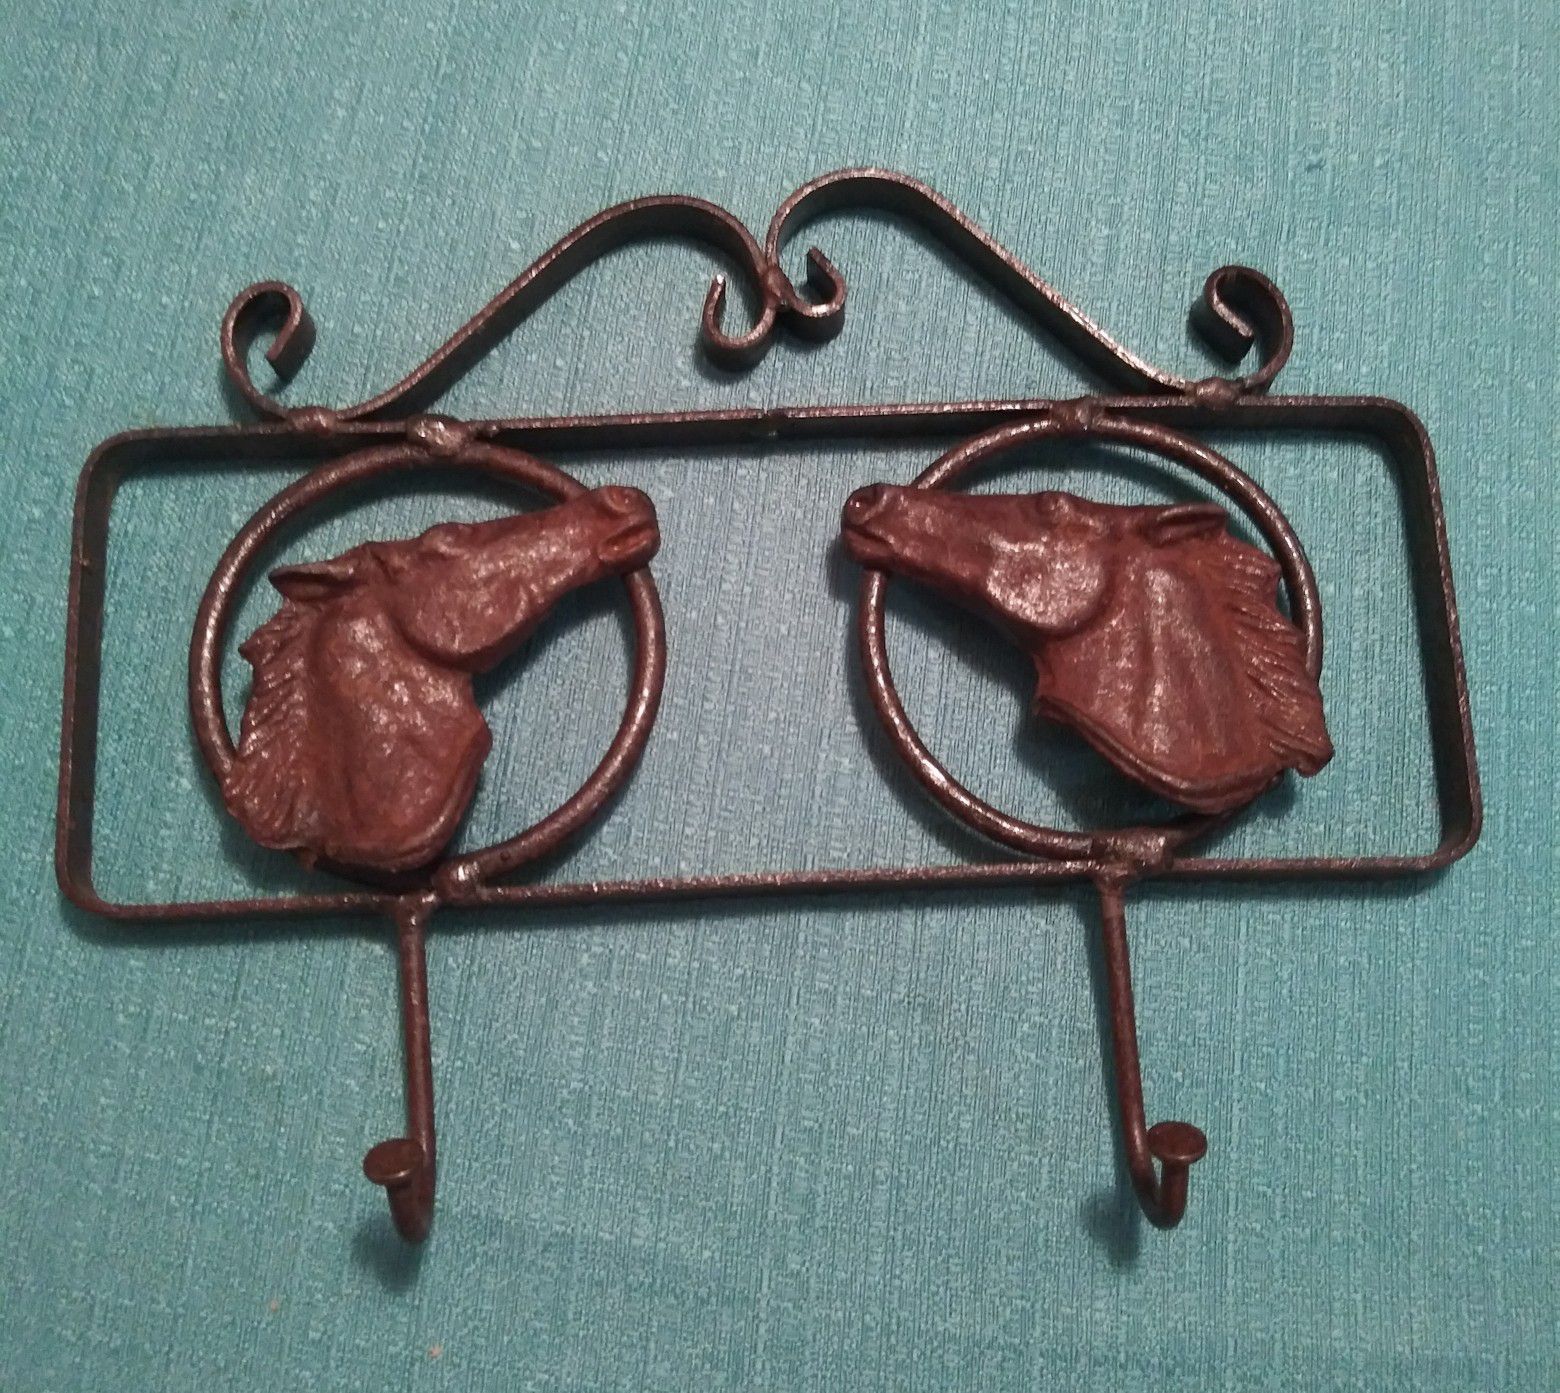 Iron horse key holder/hooks